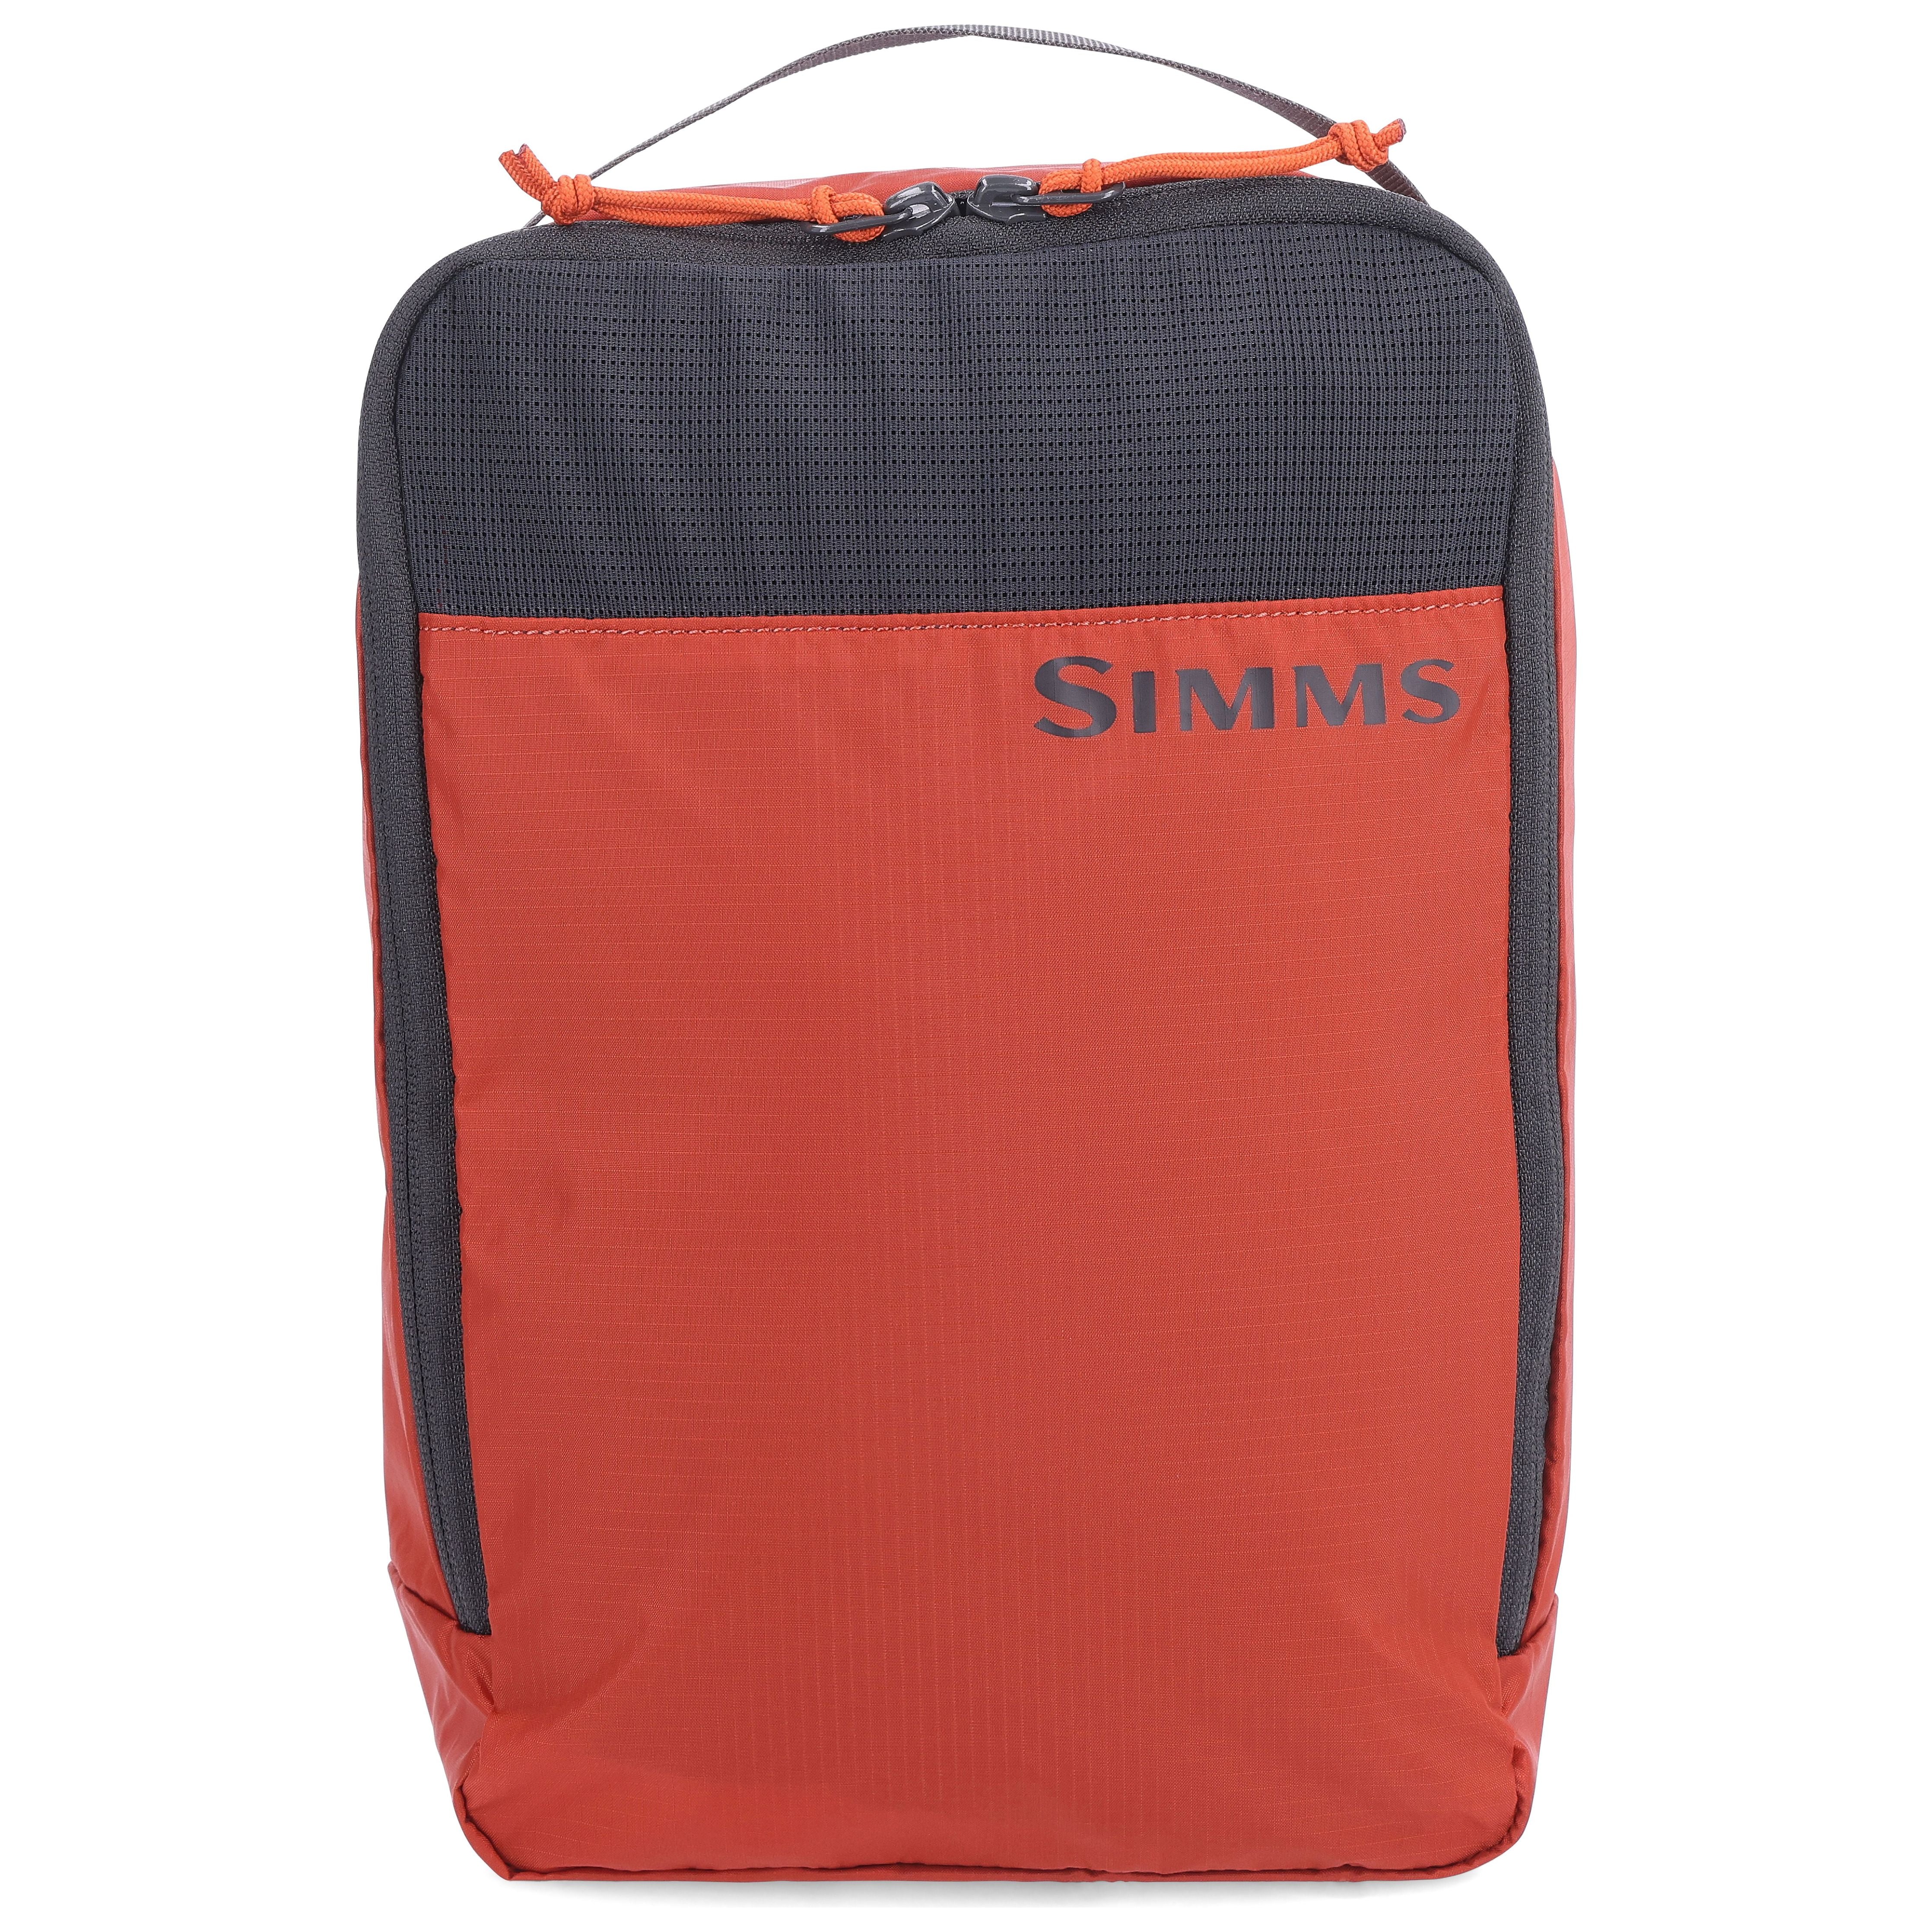 Simms GTS Packing Kit 3 Pack Simms Orange Image 03